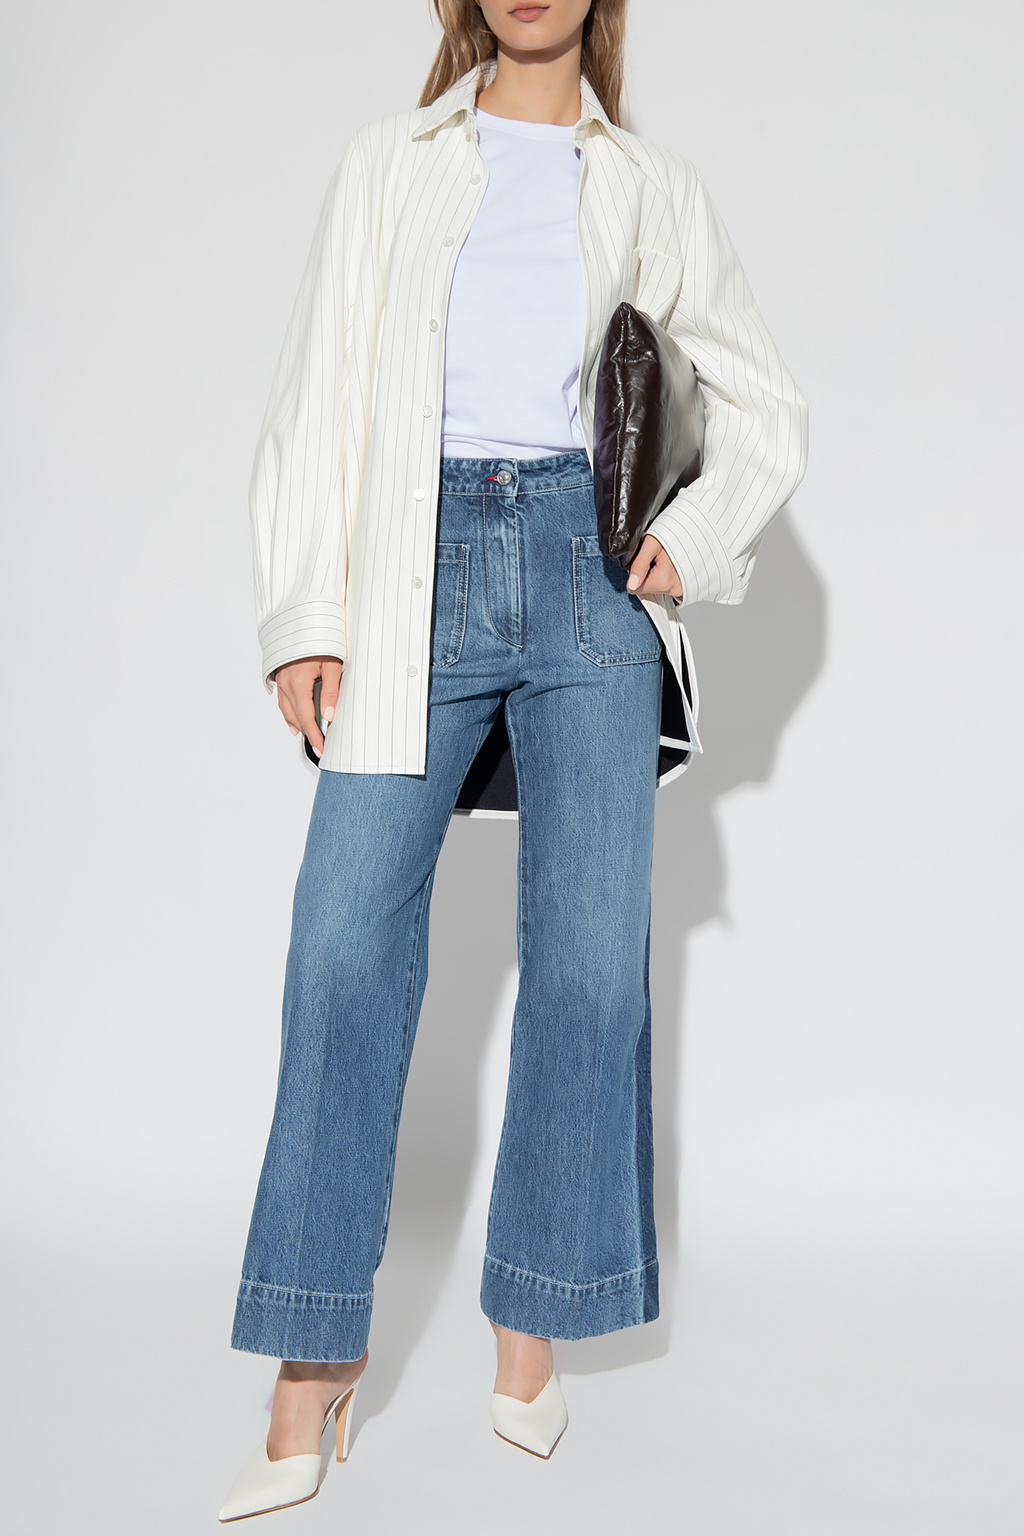 Victoria Beckham ICON DENIM Poppy high-waisted wide leg jeans